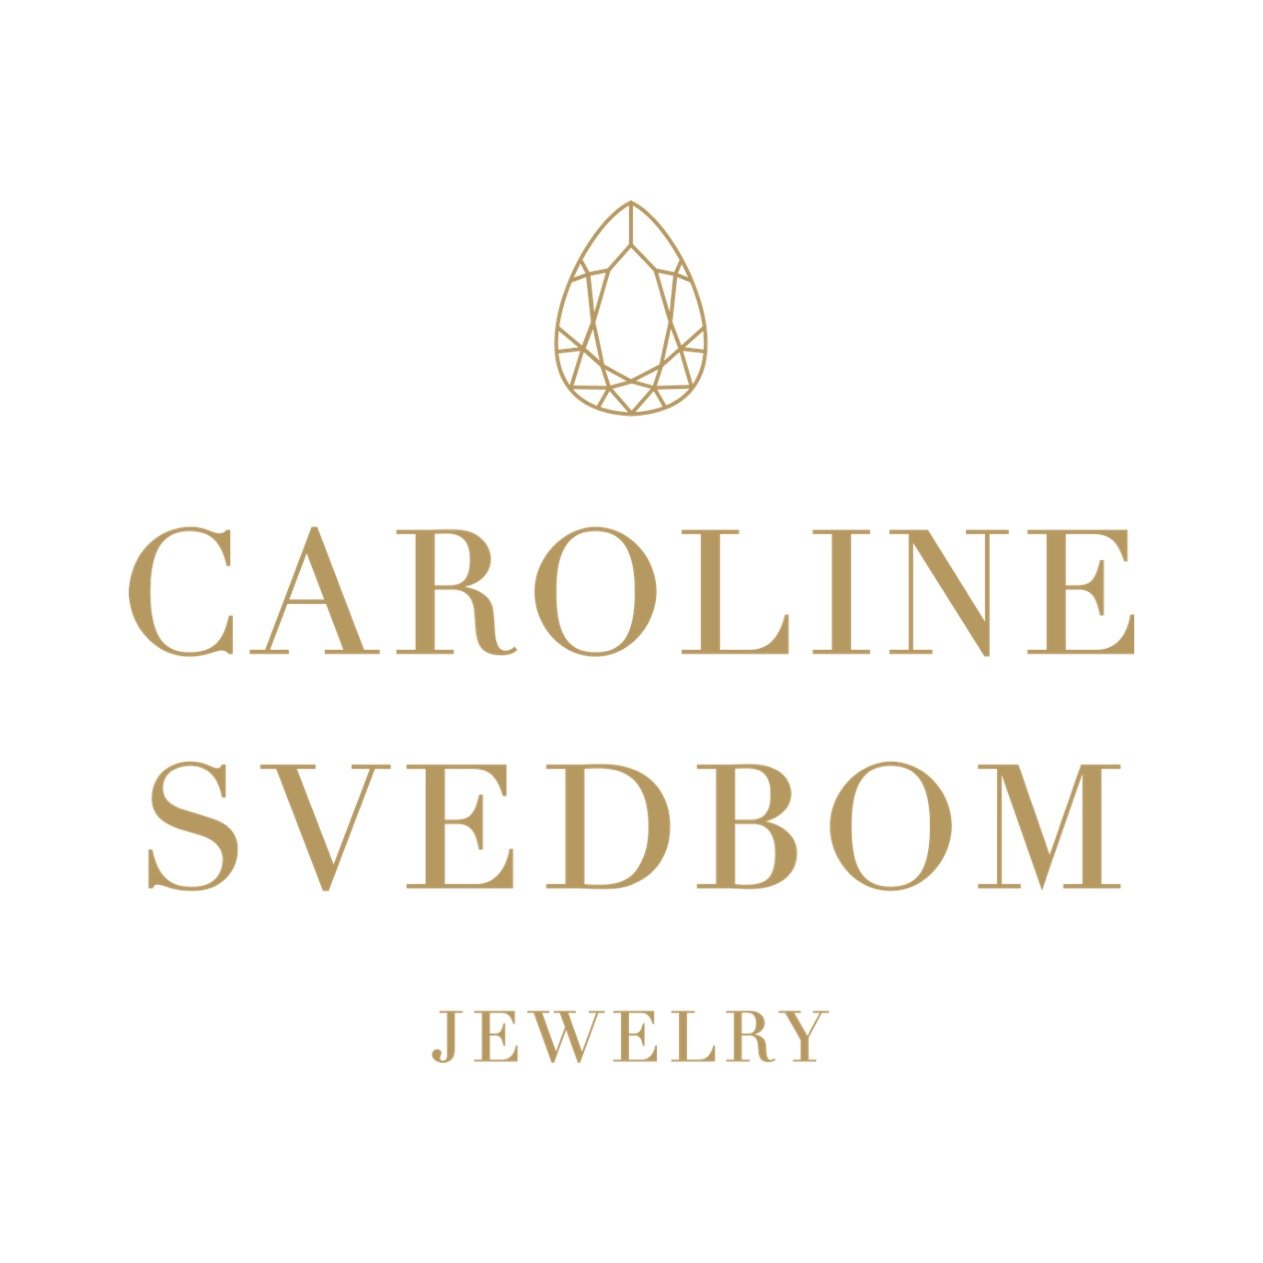 Caroline Svedbom jewelry